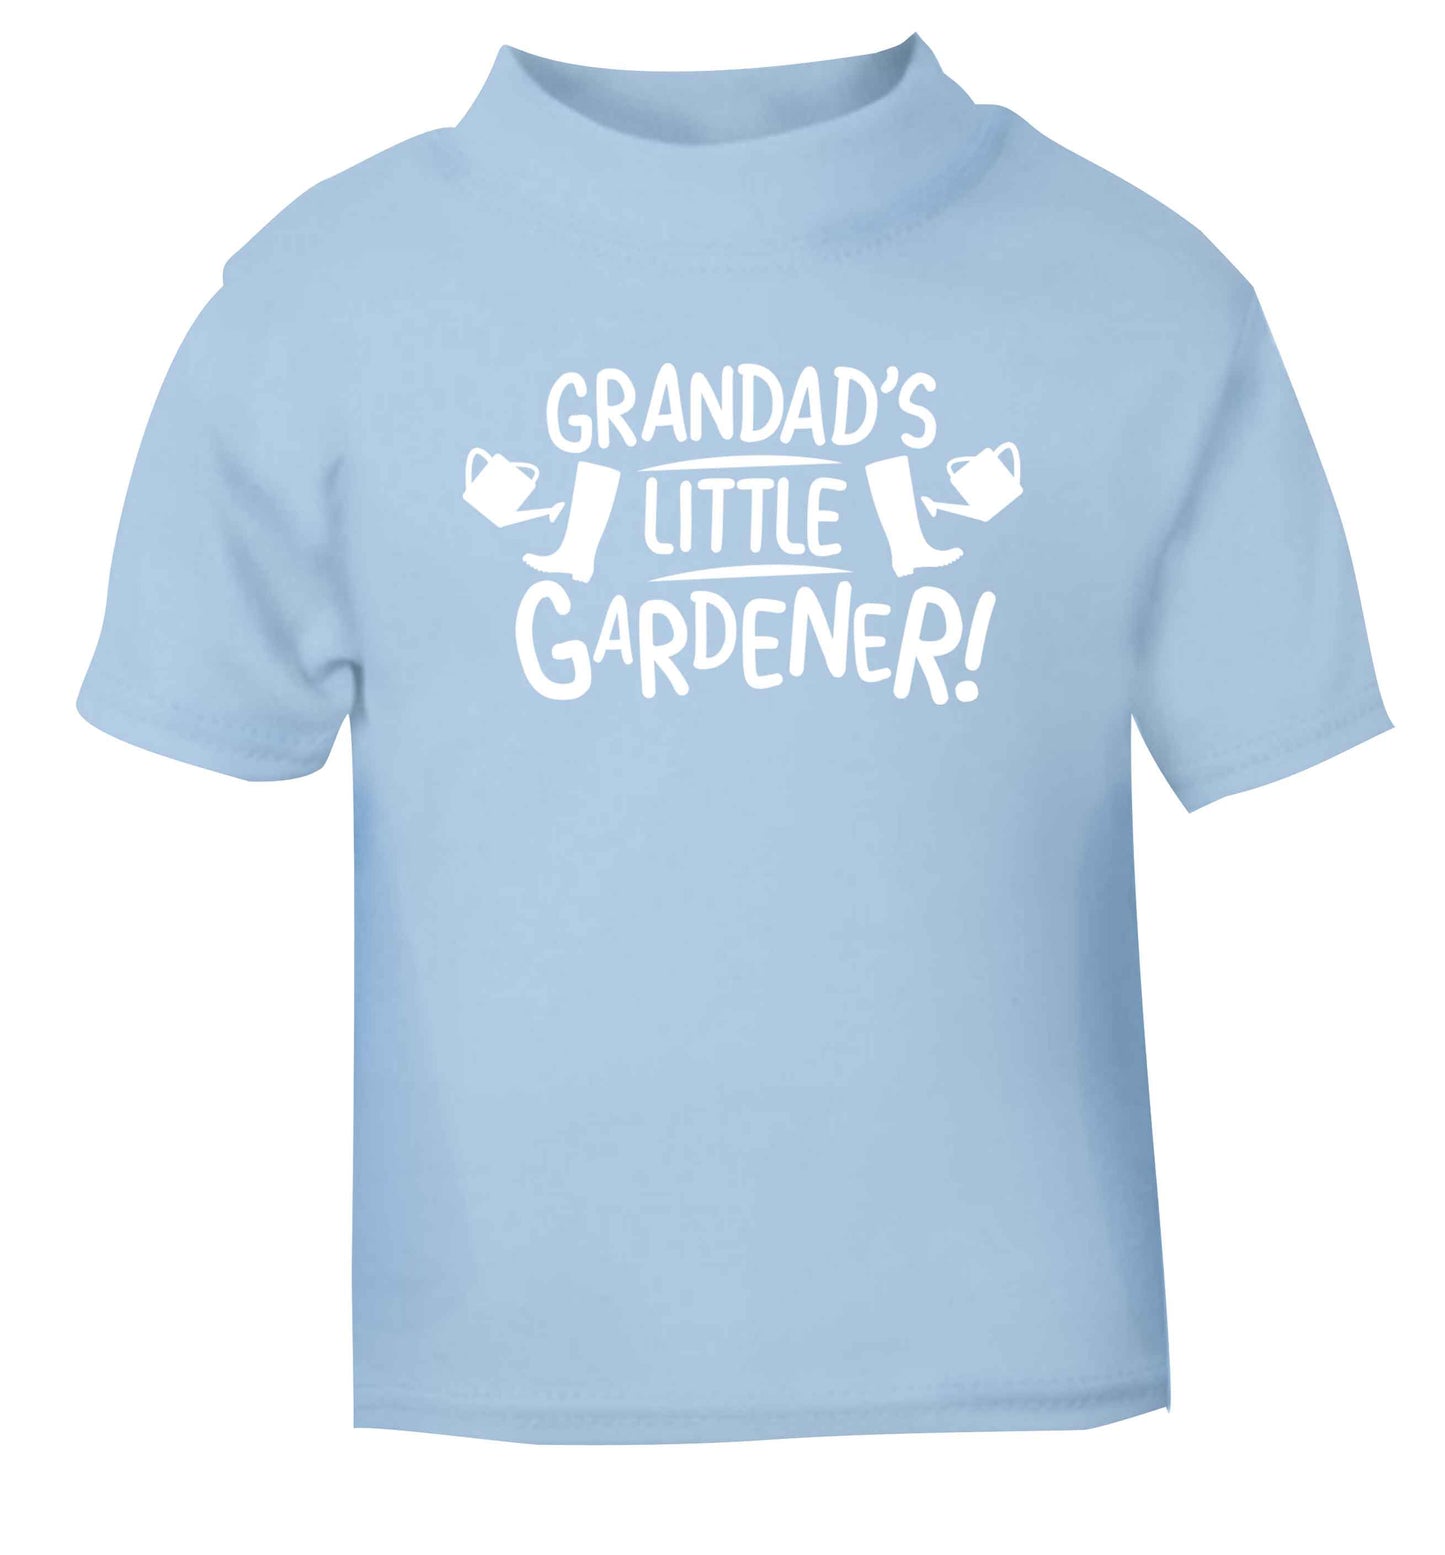 Grandad's little gardener light blue Baby Toddler Tshirt 2 Years